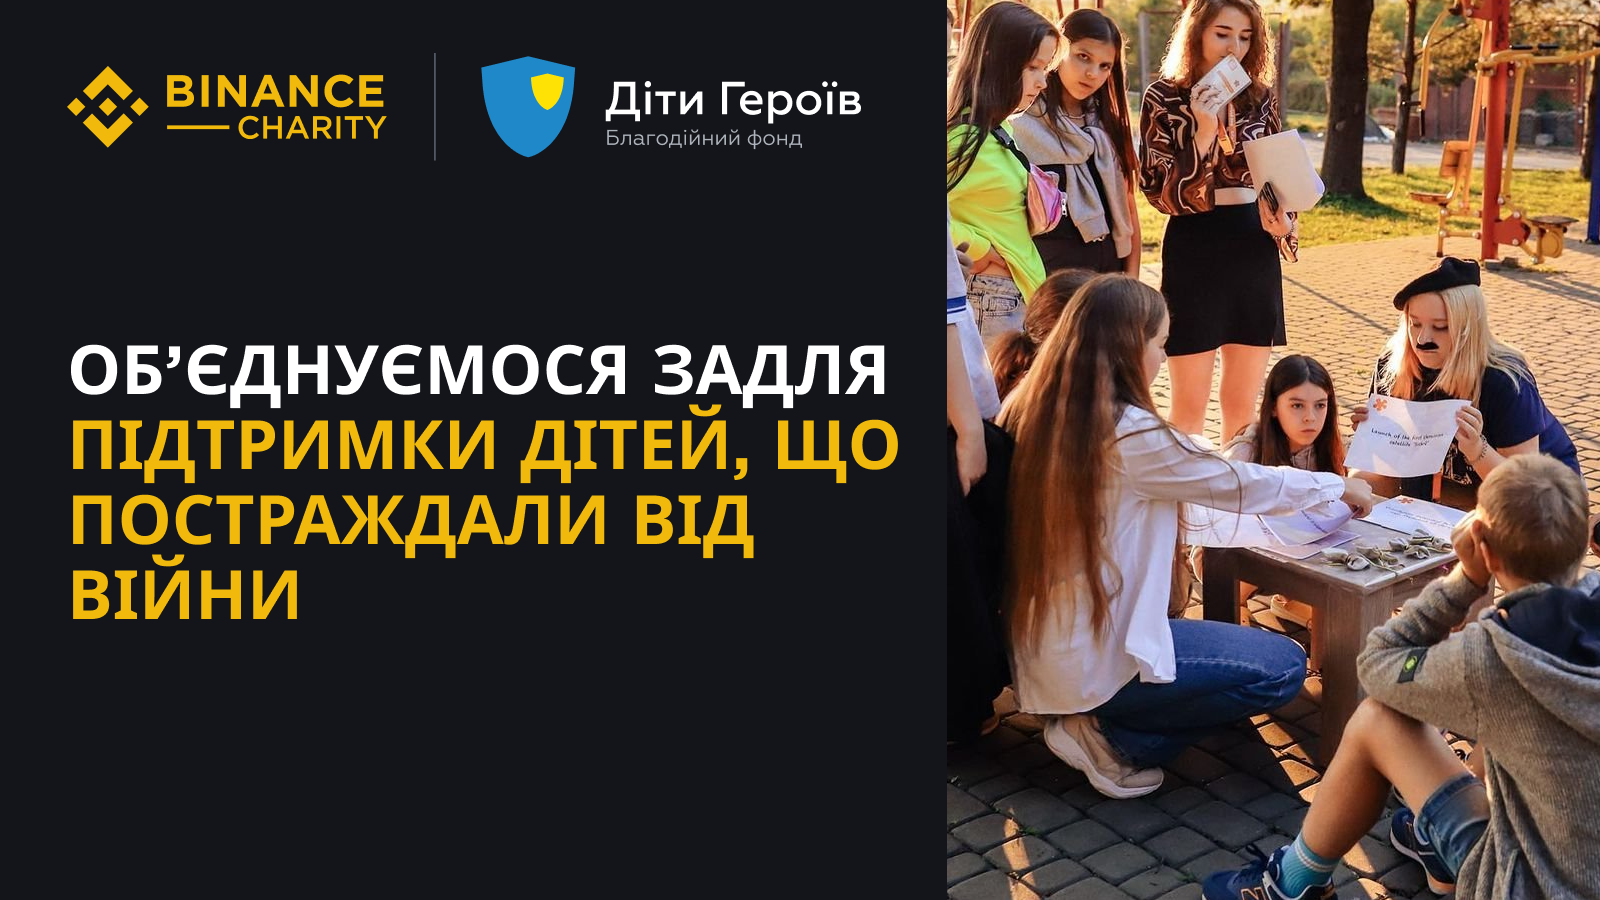 Binance Charity ta Fond "Dity Geroїv" ob'jednalysja dlja pidtrymky ditej, ščo postraždaly vid vijny v Ukraїni  